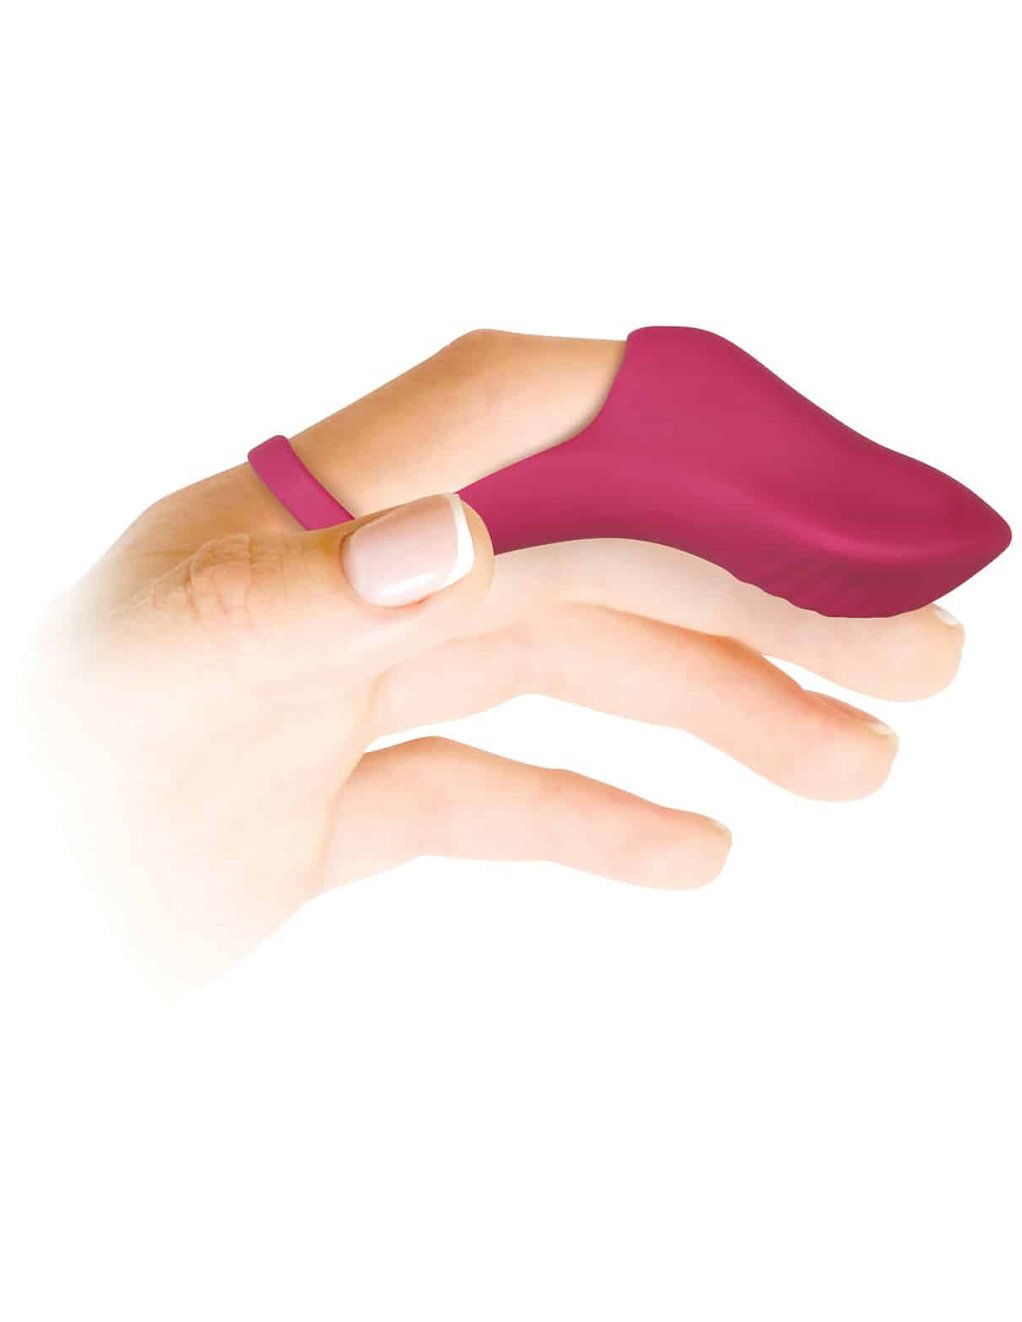 Evolved Frisky Finger 9 Function Silicone Finger Vibrator Novelties at Hustler Hollywood picture